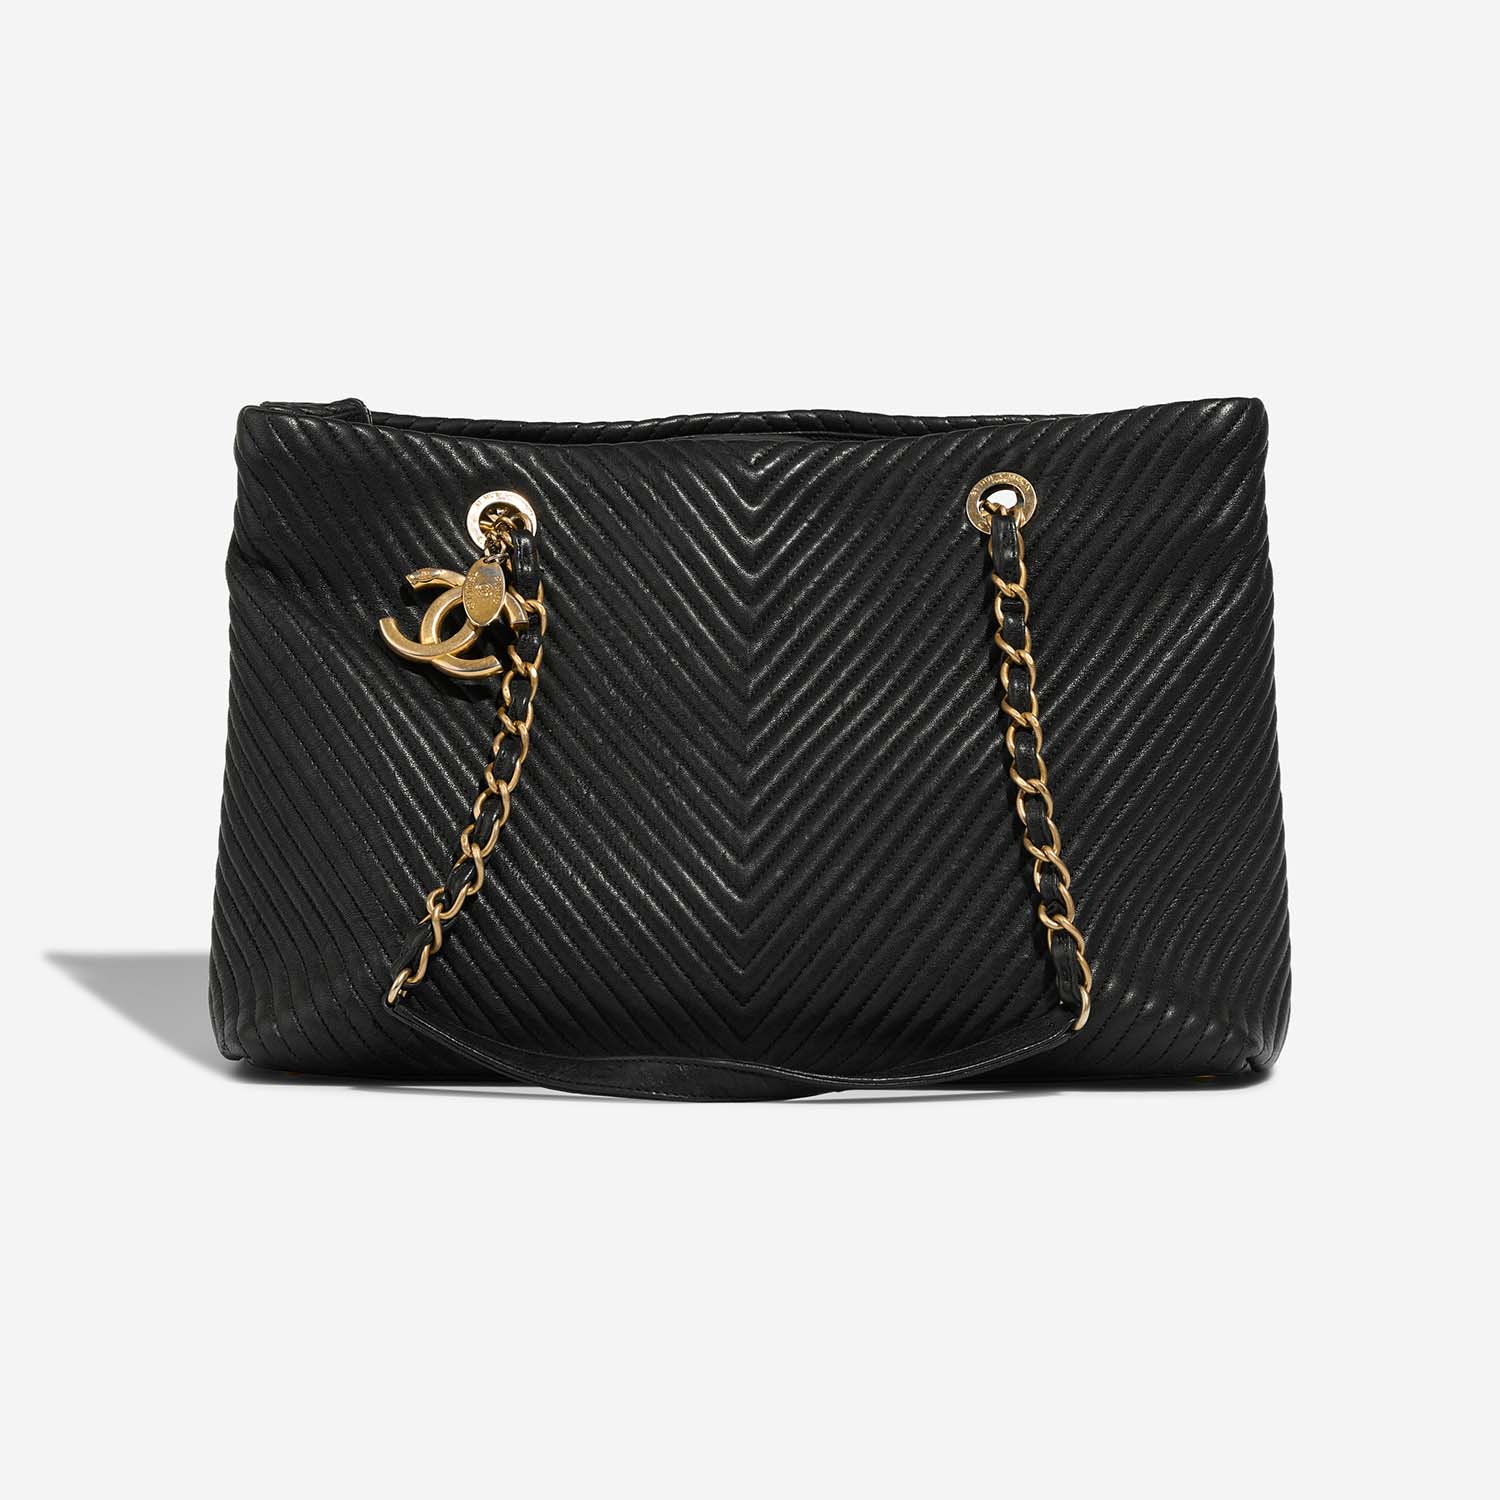 Chanel GST Large Black Front S | Verkaufen Sie Ihre Designer-Tasche auf Saclab.com